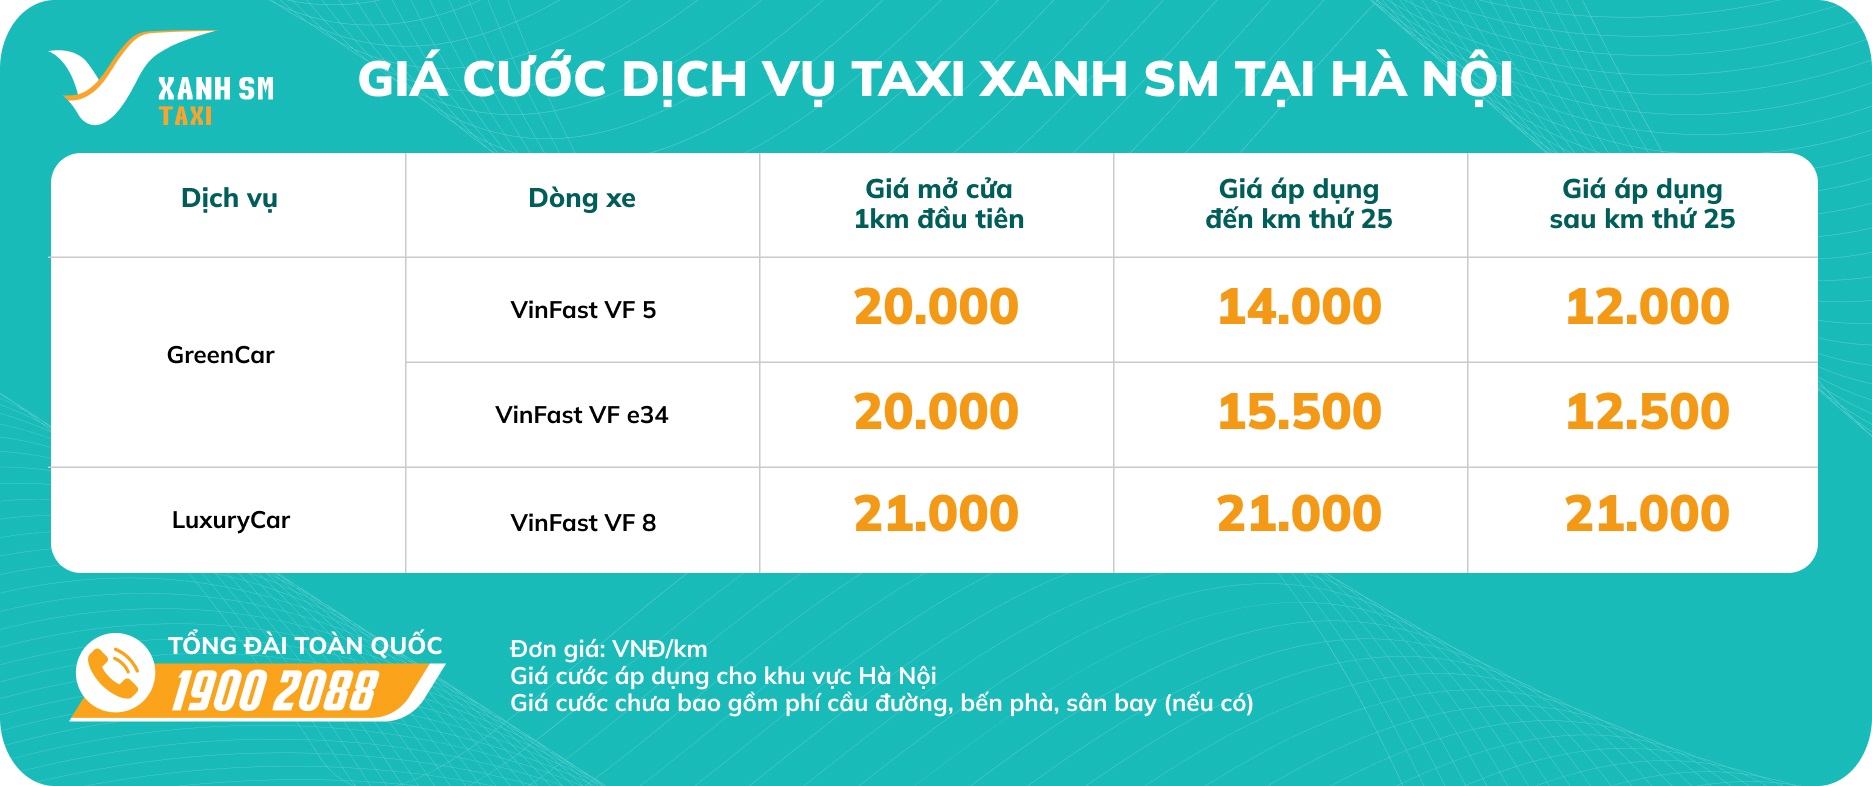 Taxi Xanh SM chính thức hoạt động tại Hà Nội từ ngày 1/04/2023 - Ảnh 2.